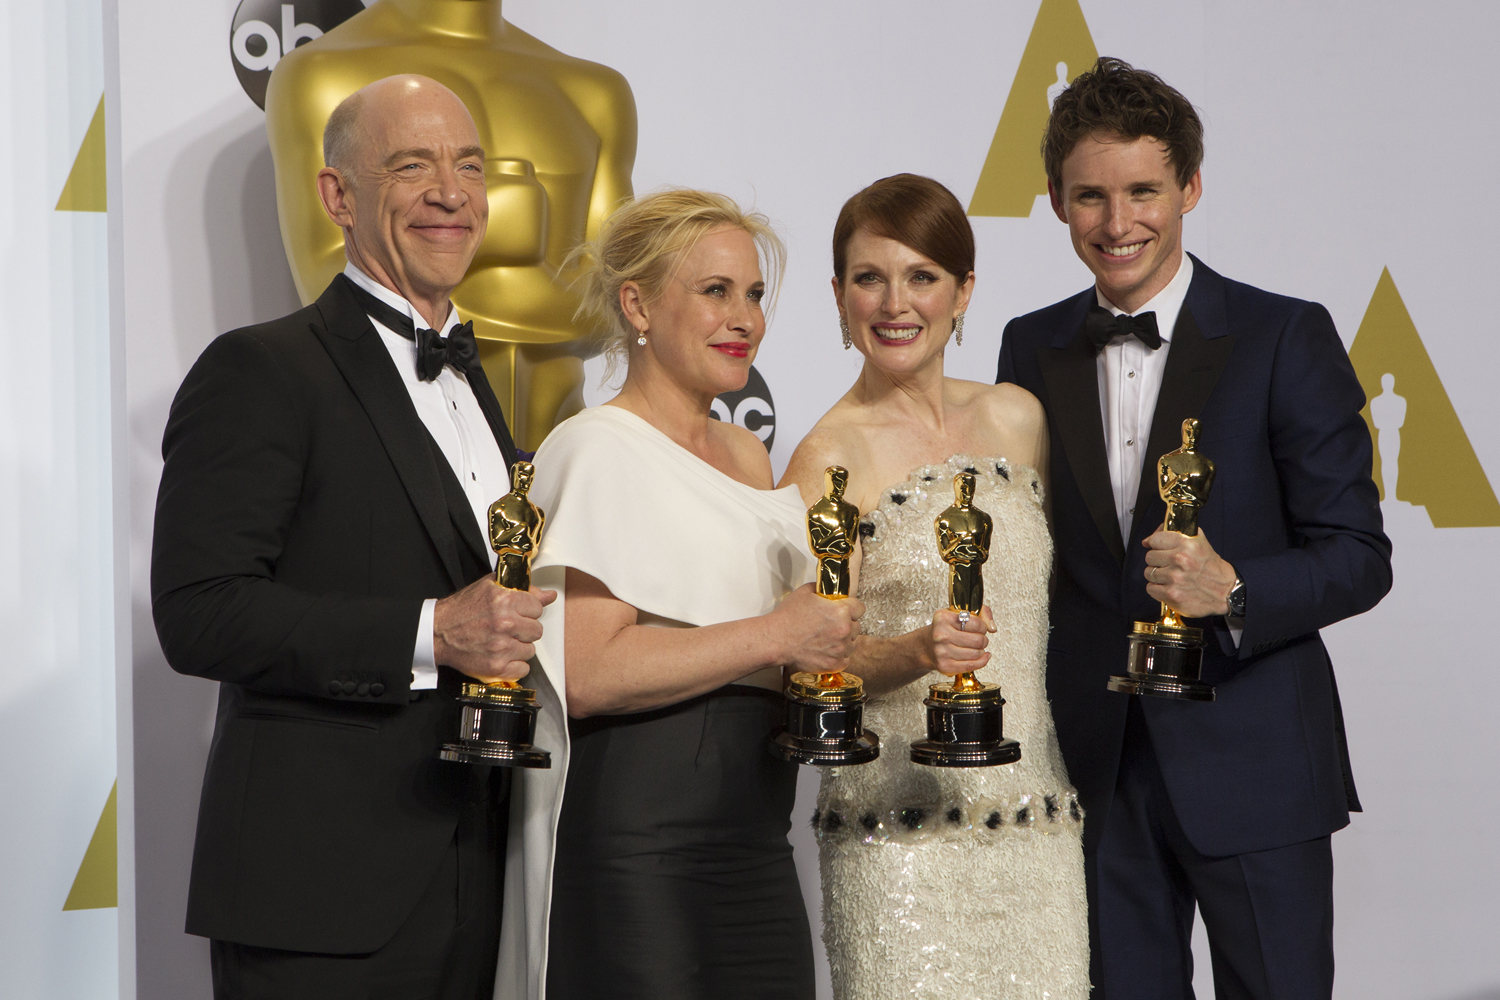 Feminist Highlights and Fails at the 2015 Oscars